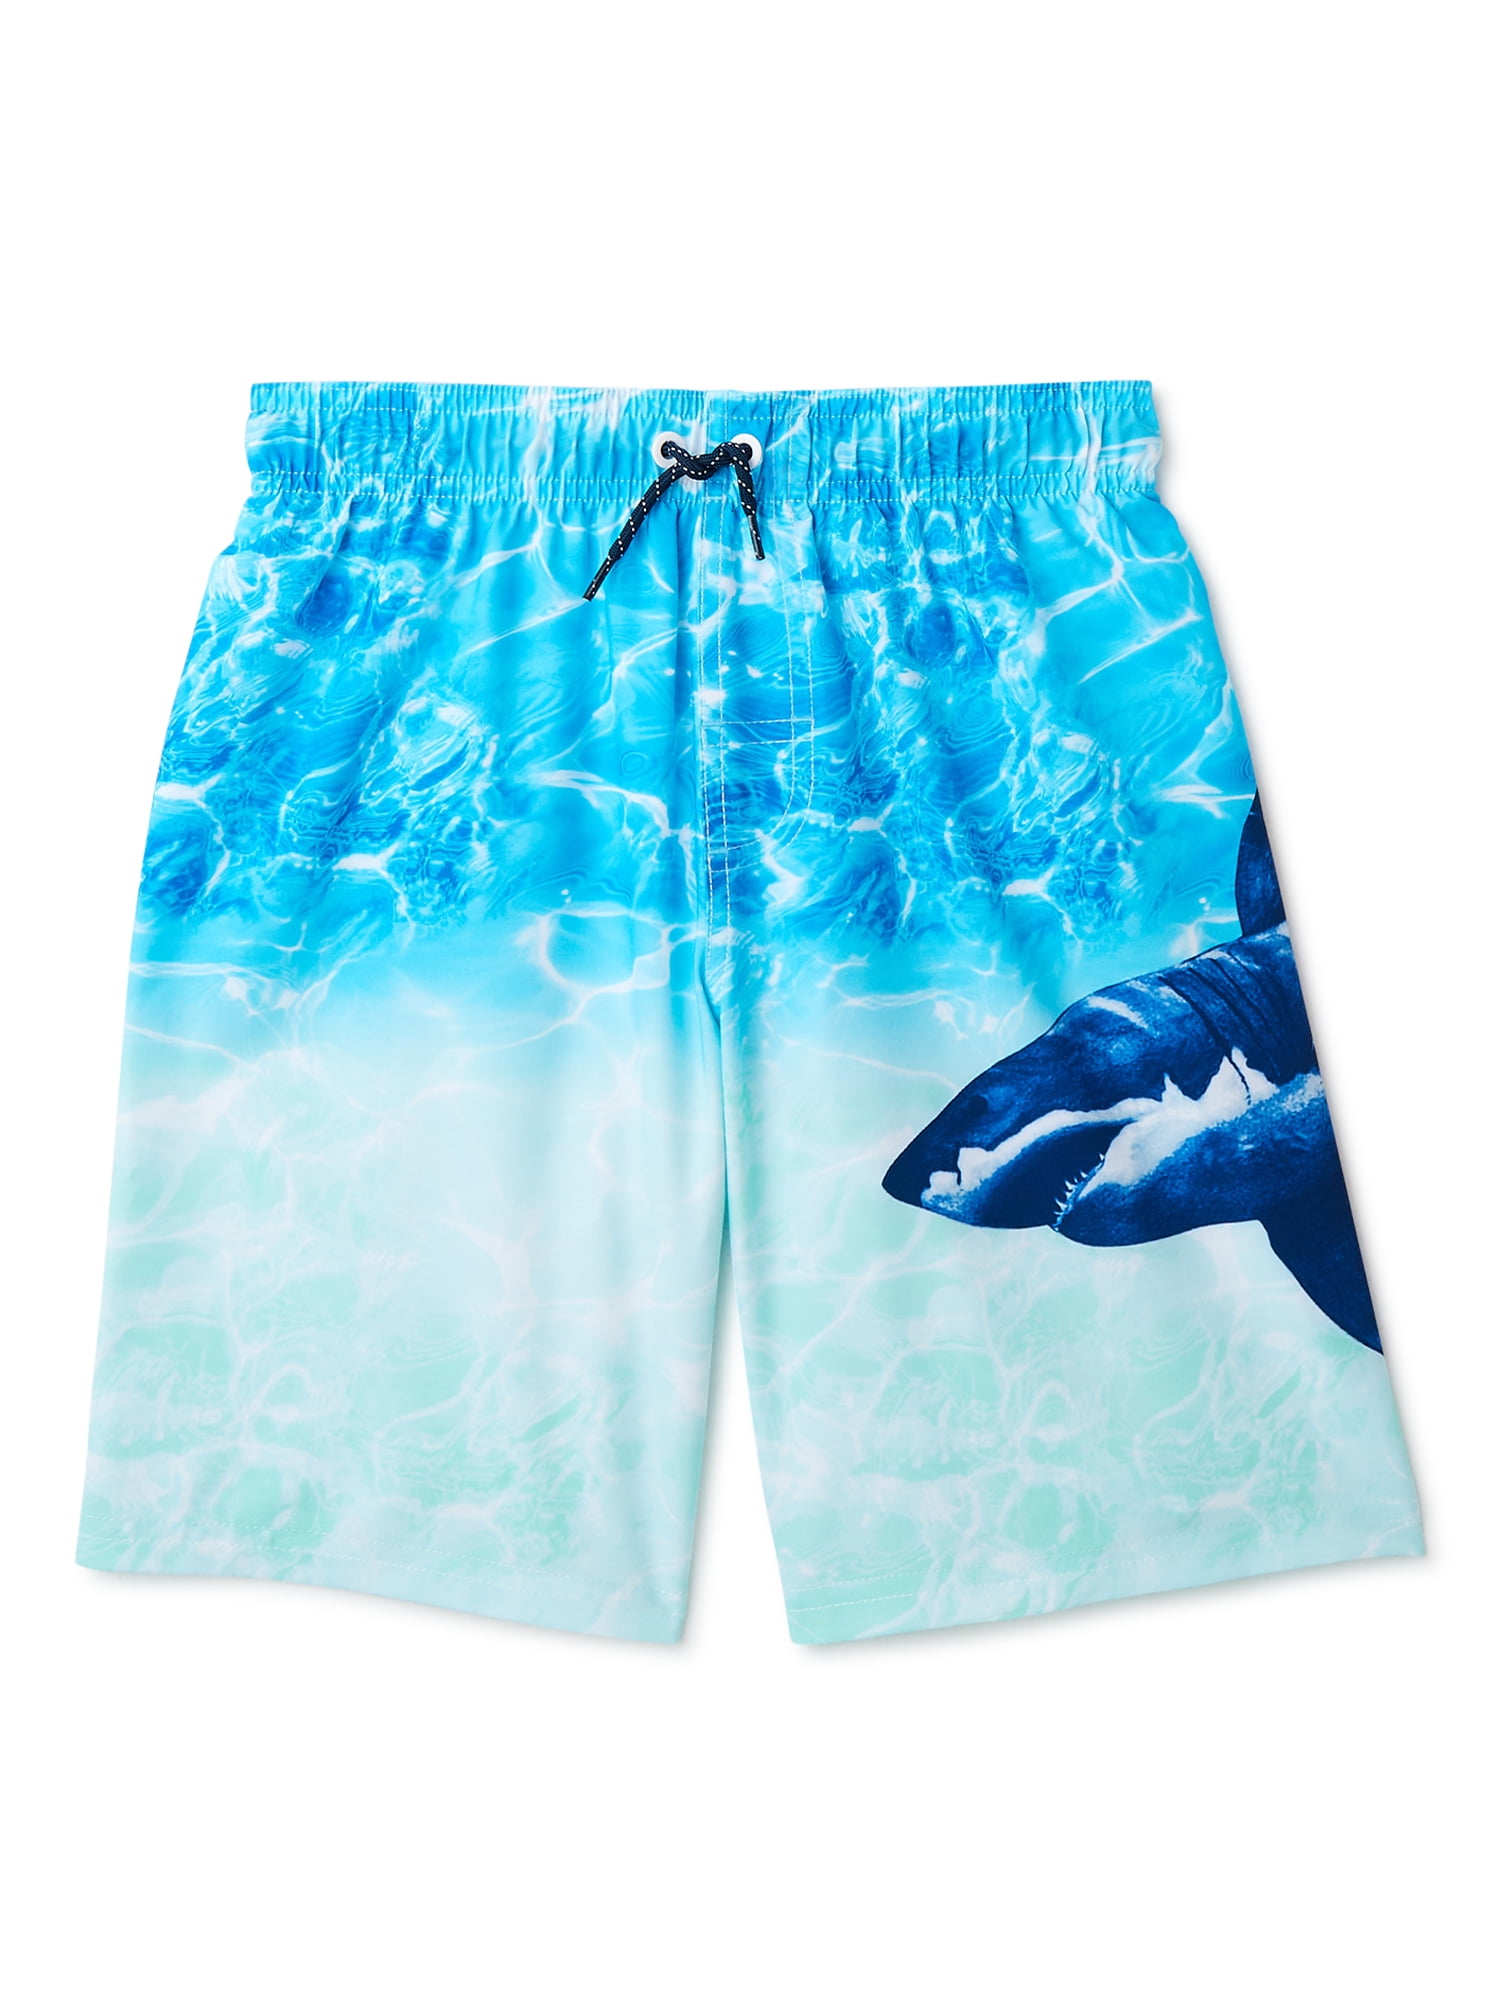 Horizon-t Beach Shorts California State Flag Mens Fashion Quick Dry Beach Shorts Cool Casual Beach Shorts